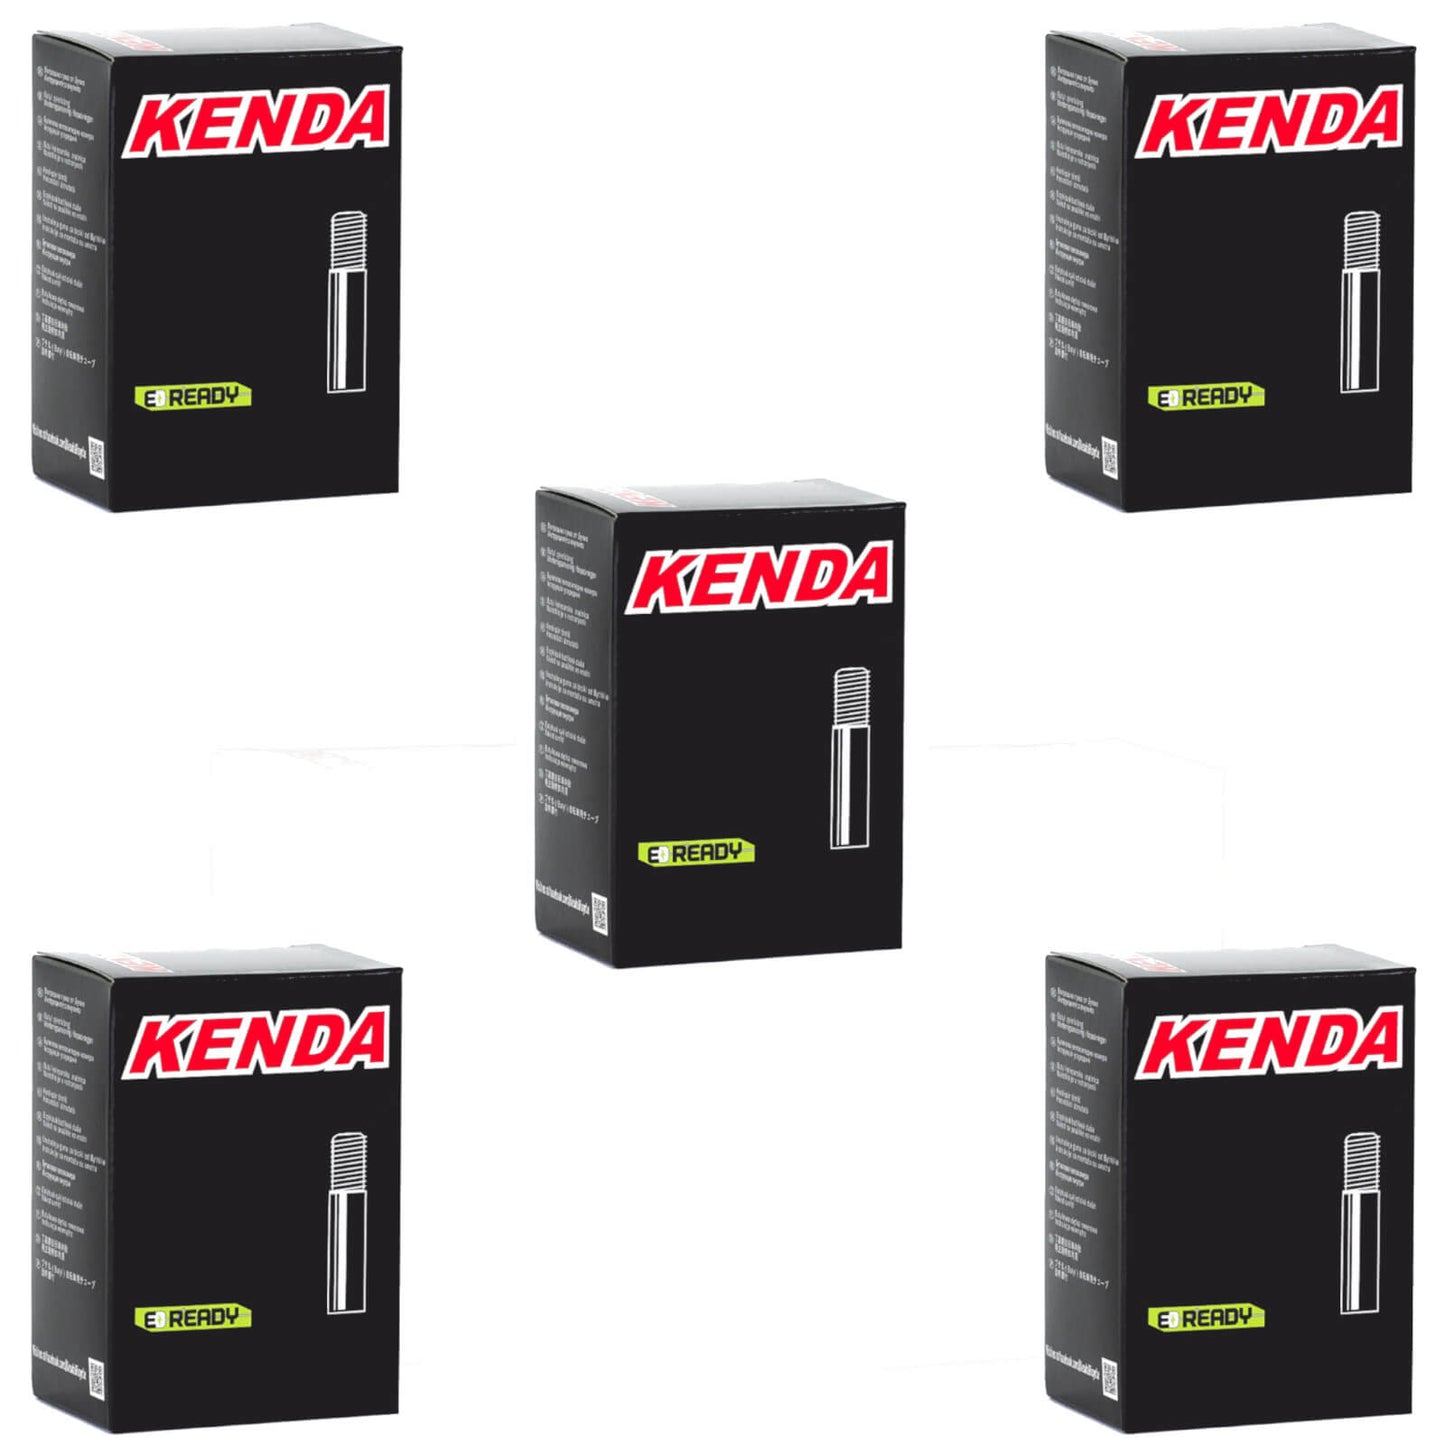 Kenda 700x28-35c 700c Schrader Valve Bike Inner Tube Pack of 5